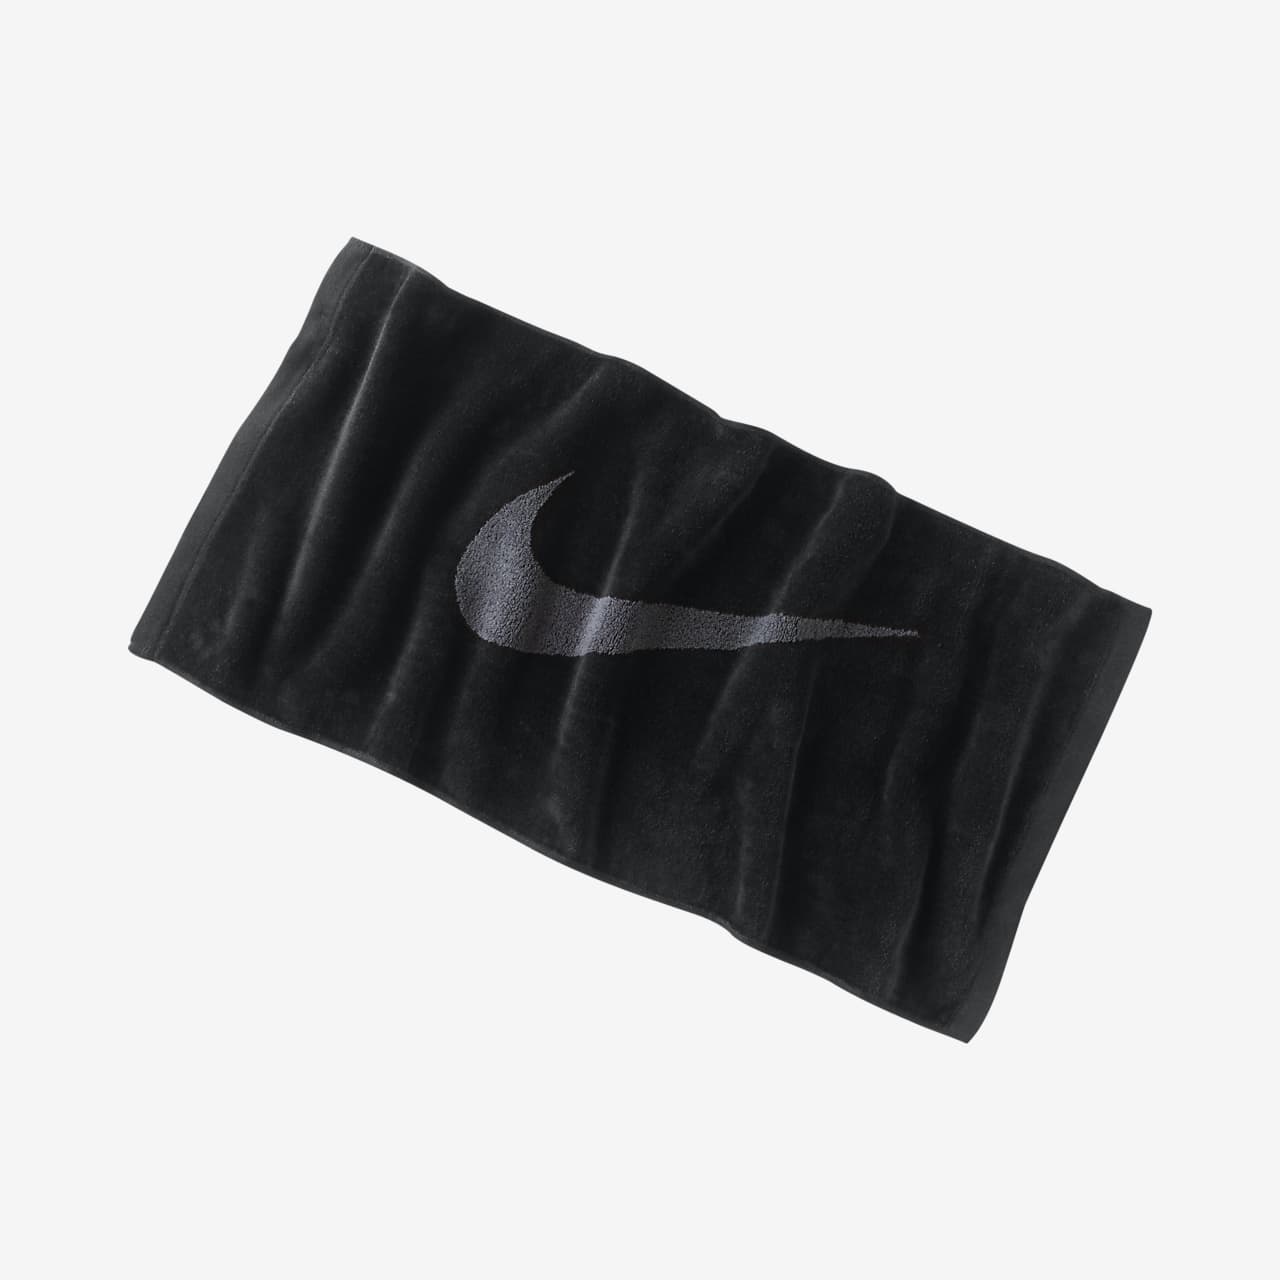 black nike towel